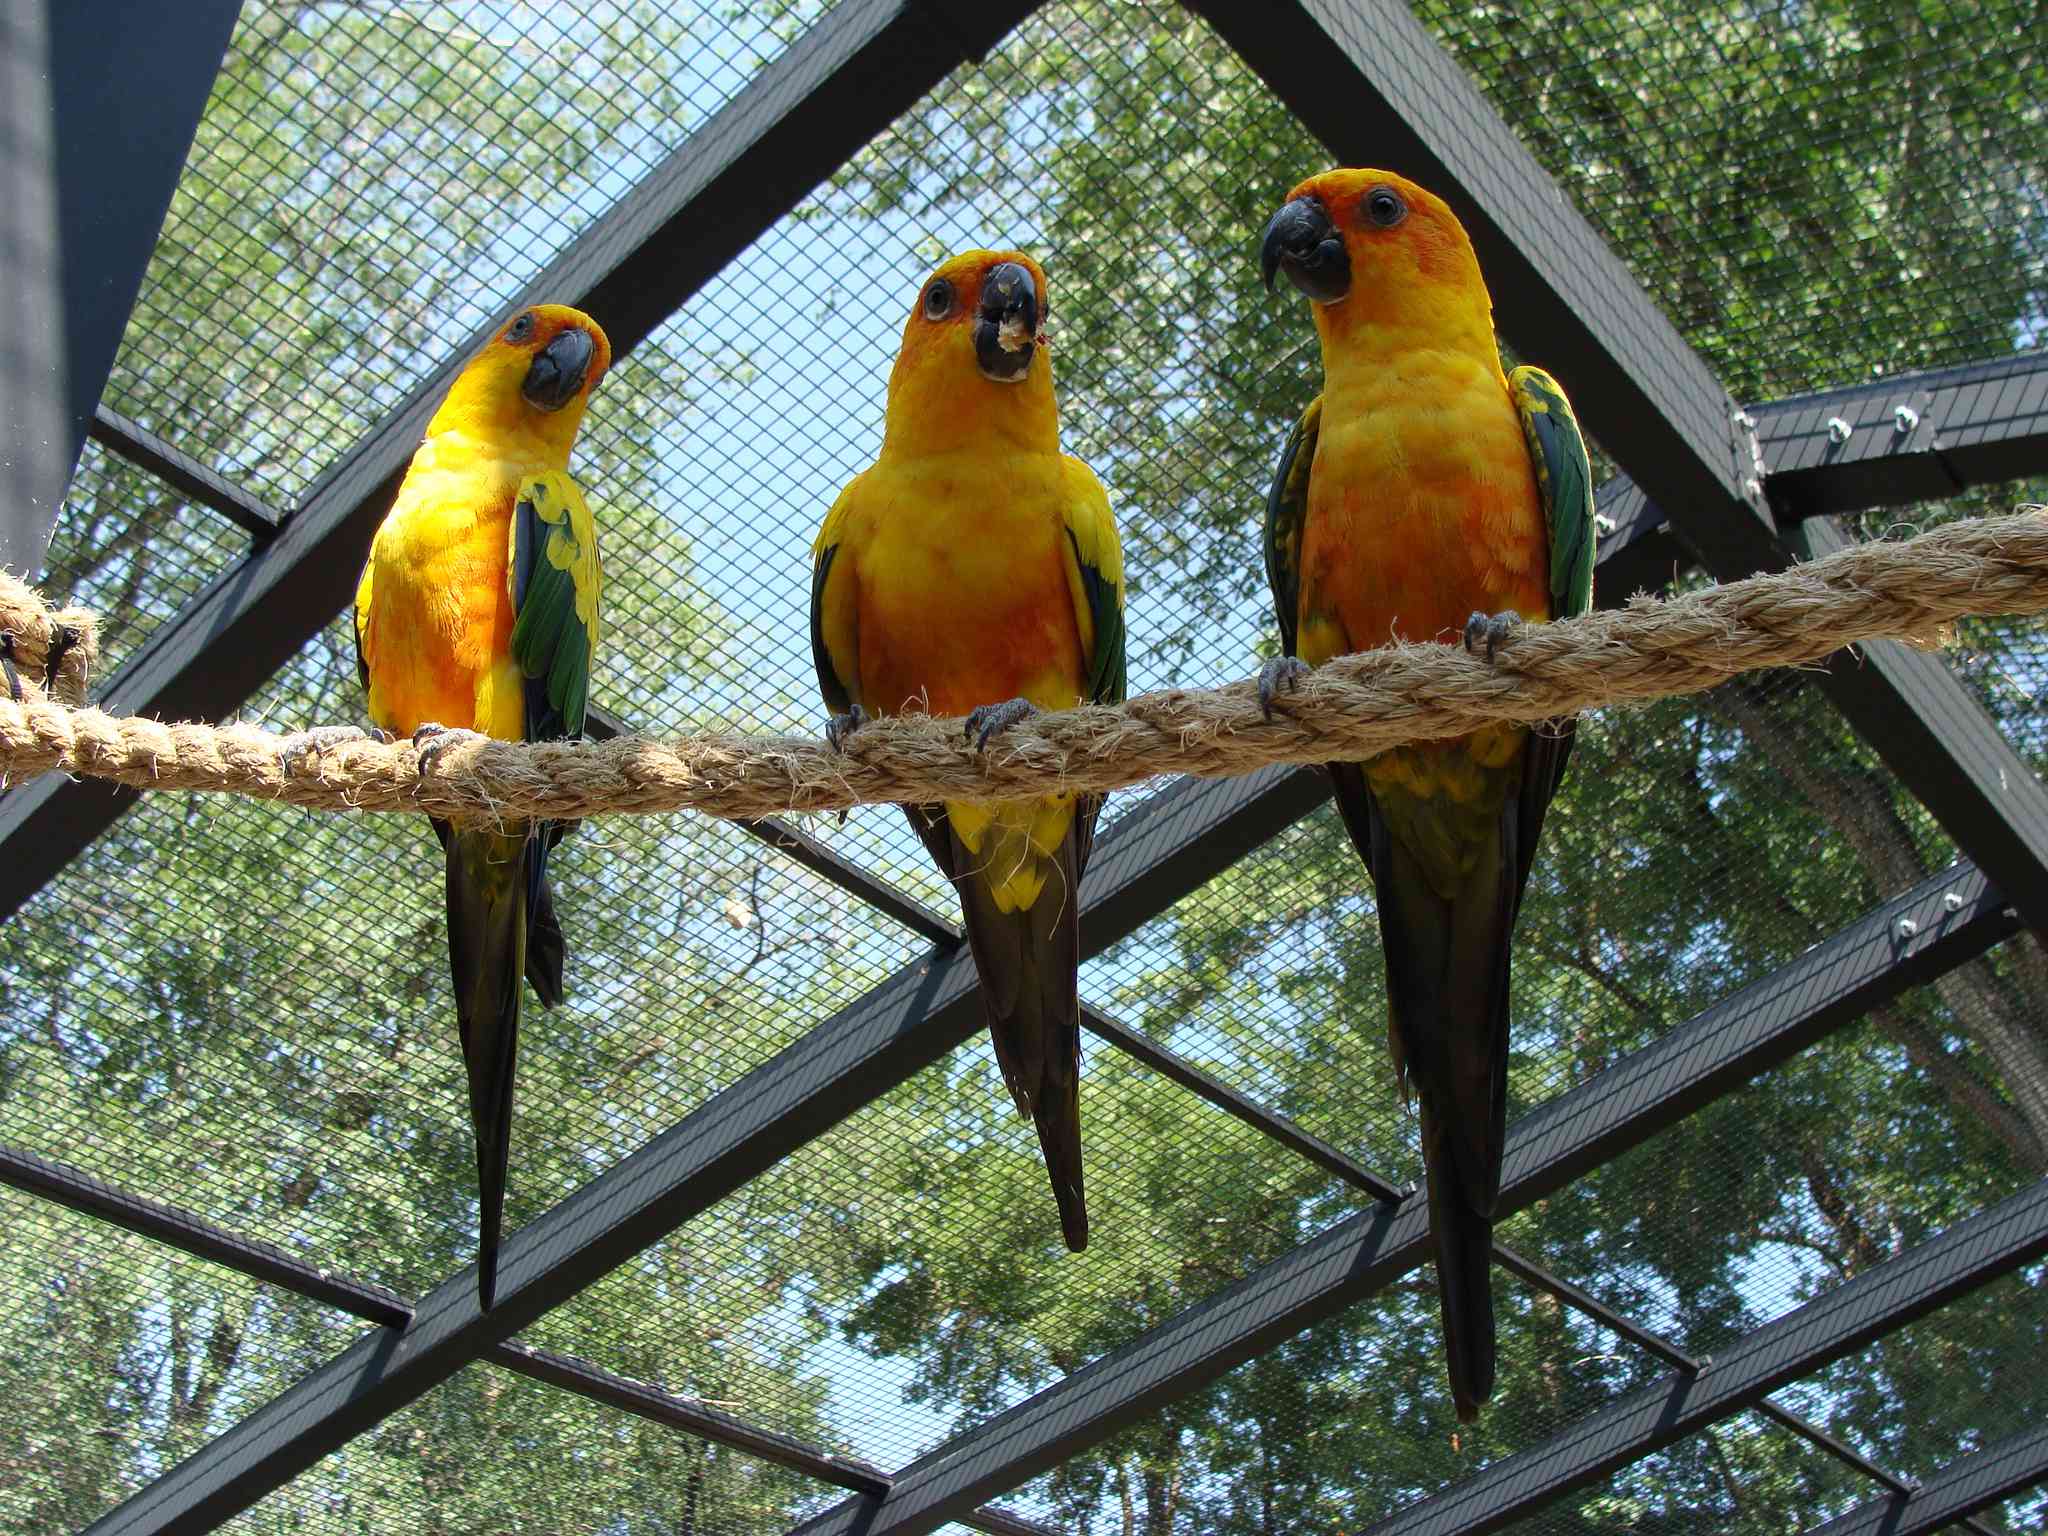 Tres conuros de color naranja amarillento descansan sobre una cuerda